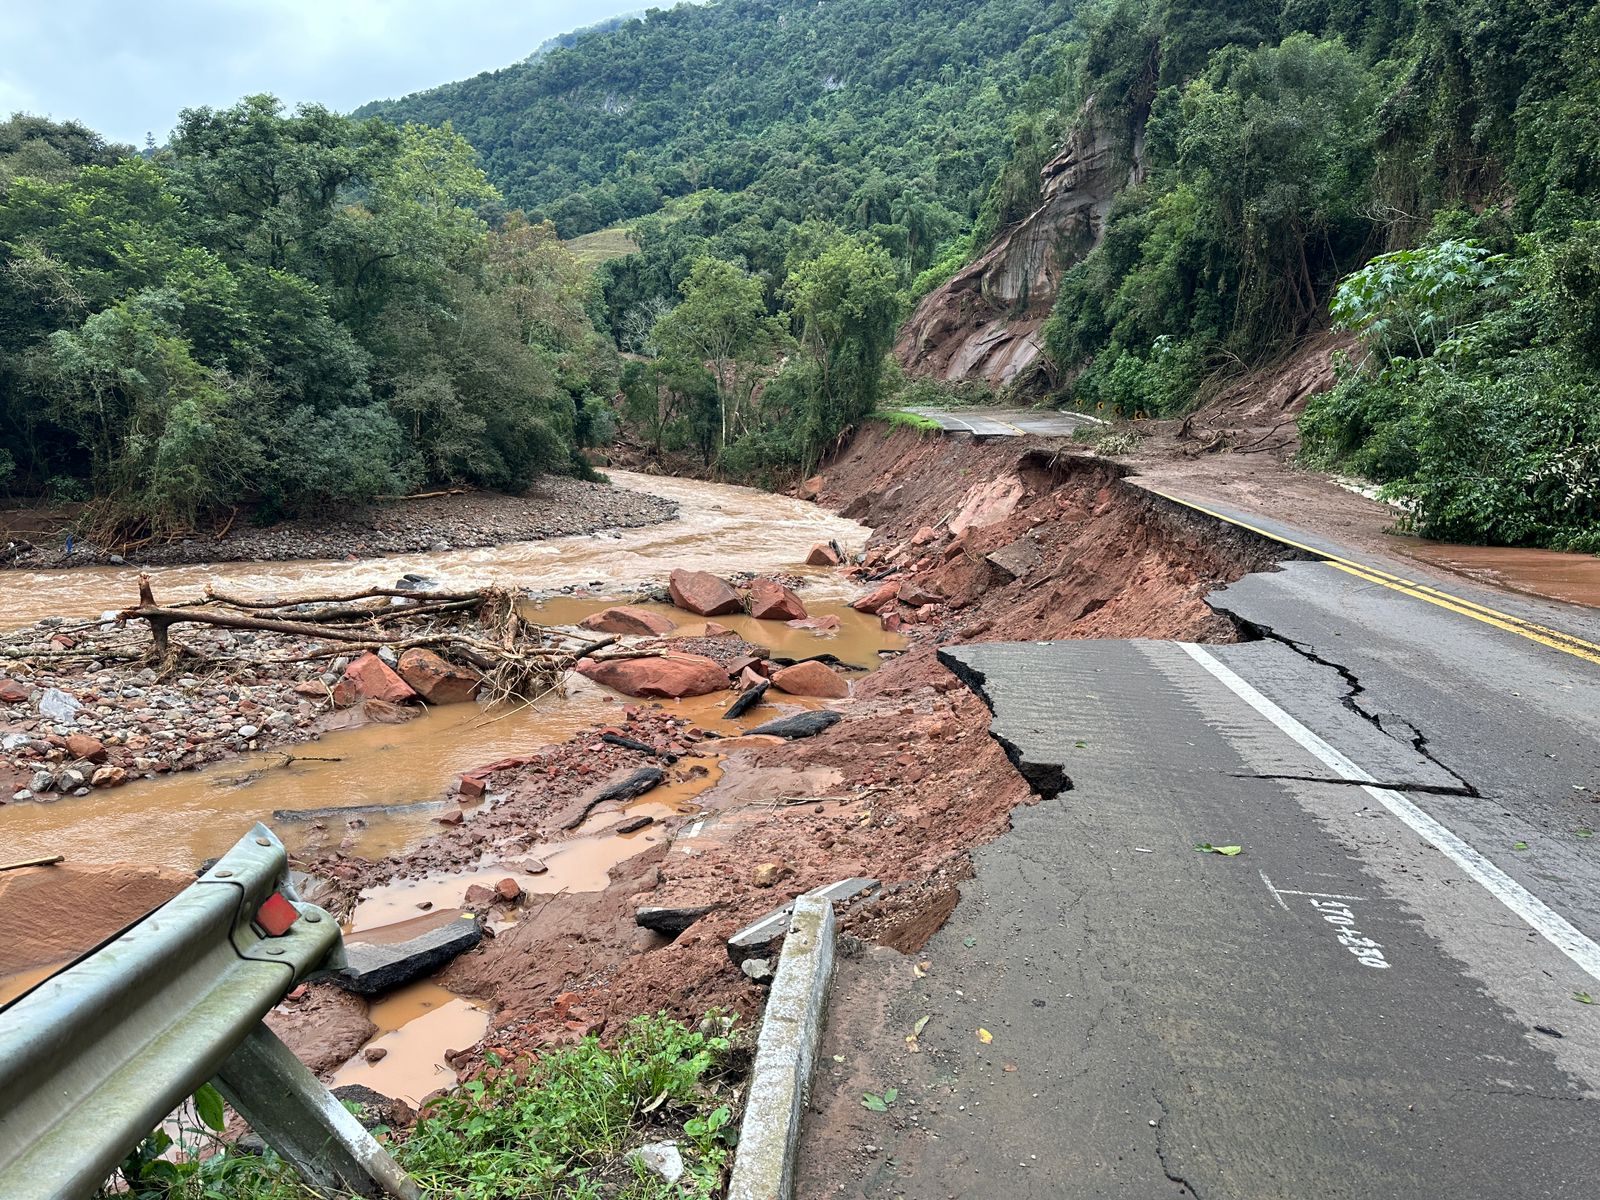 Foto colorida da pista da BR-116, no município de Caxias do Sul, destruída pela enchente. A imagem mostra a pista destruída por deslizamento de terra, com lama e poças de água no lado esquerdo da imagem. Ao fundo, árvores e serra